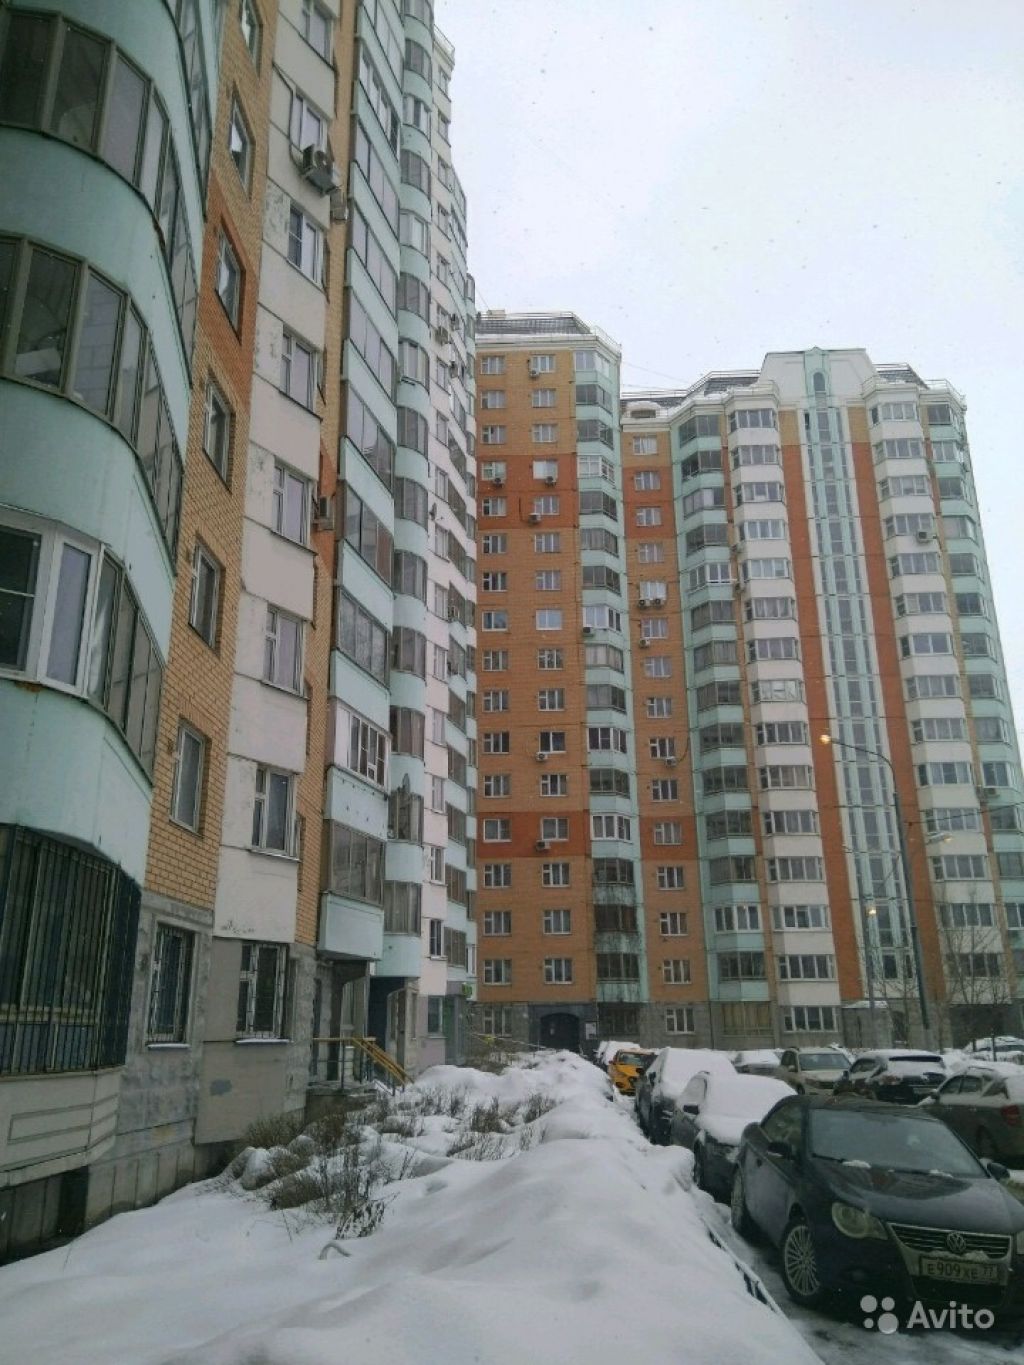 Продам квартиру 1-к квартира 38 м² на 12 этаже 17-этажного панельного дома в Москве. Фото 1